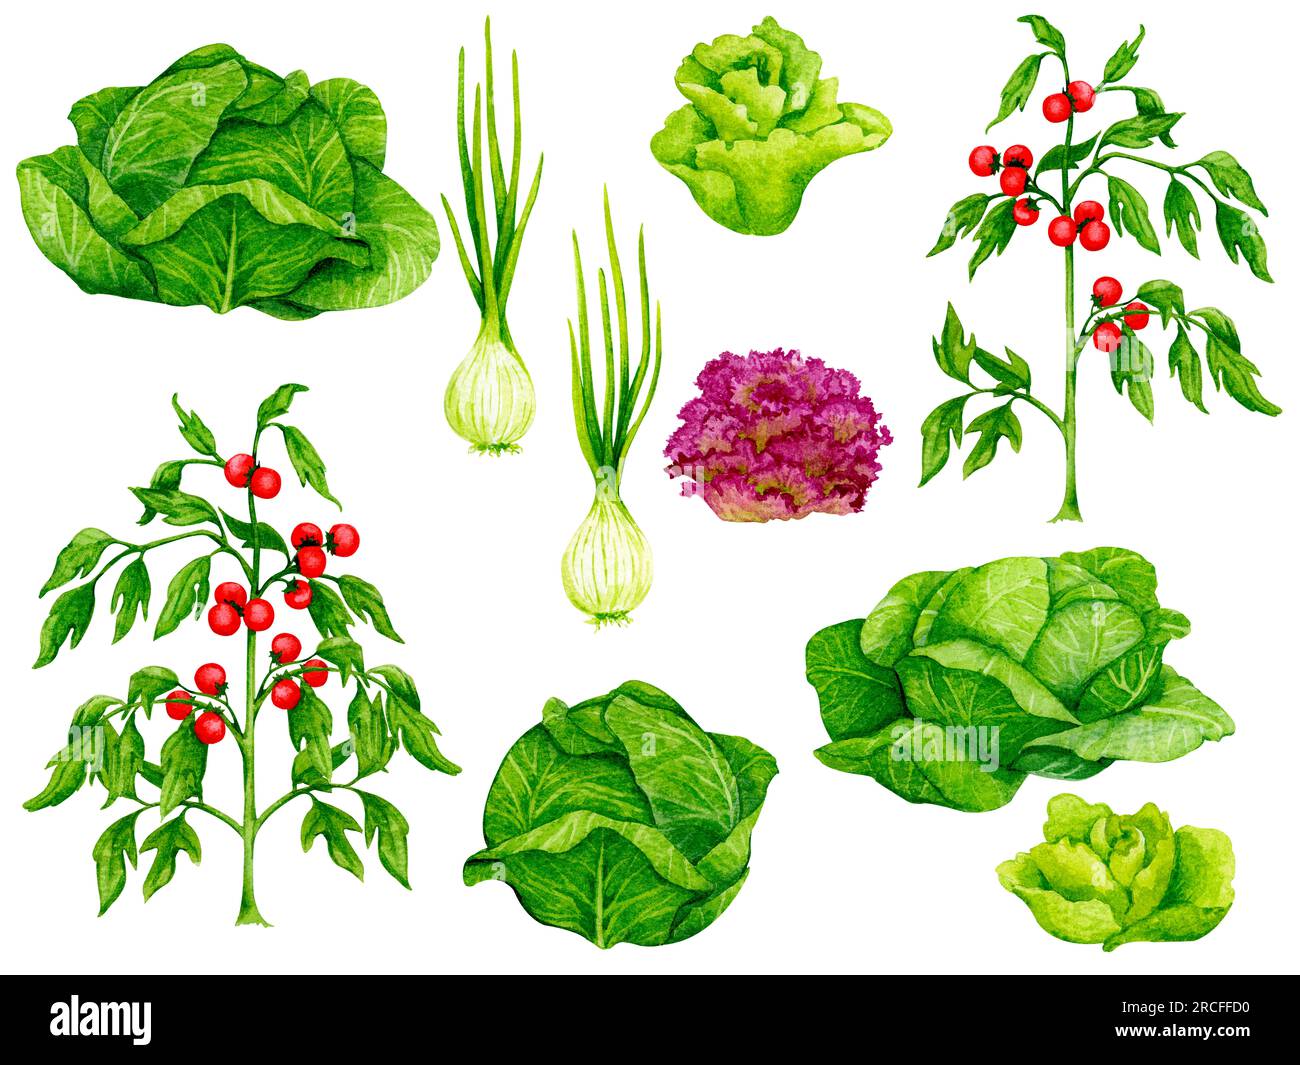 Ensemble de légumes frais : tomates, oignons, chou, salades. Éléments aquarelles sur le thème du jardinage, de la récolte, de l'alimentation saine, illustrations o Banque D'Images